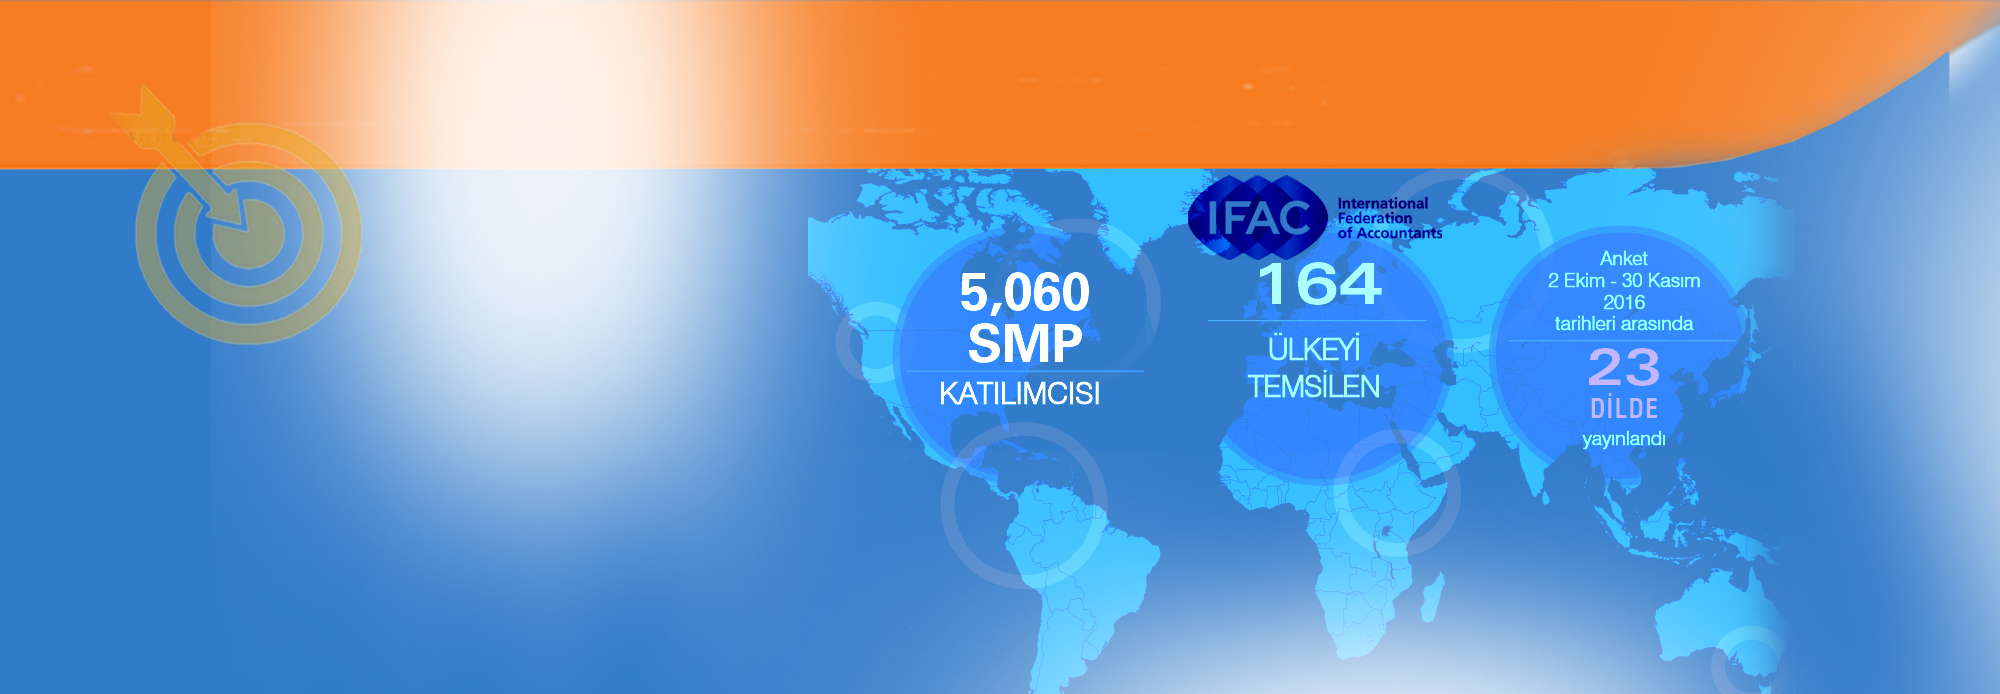 IFAC 2016 Küresel</br> SMP Anketi Sonuçları